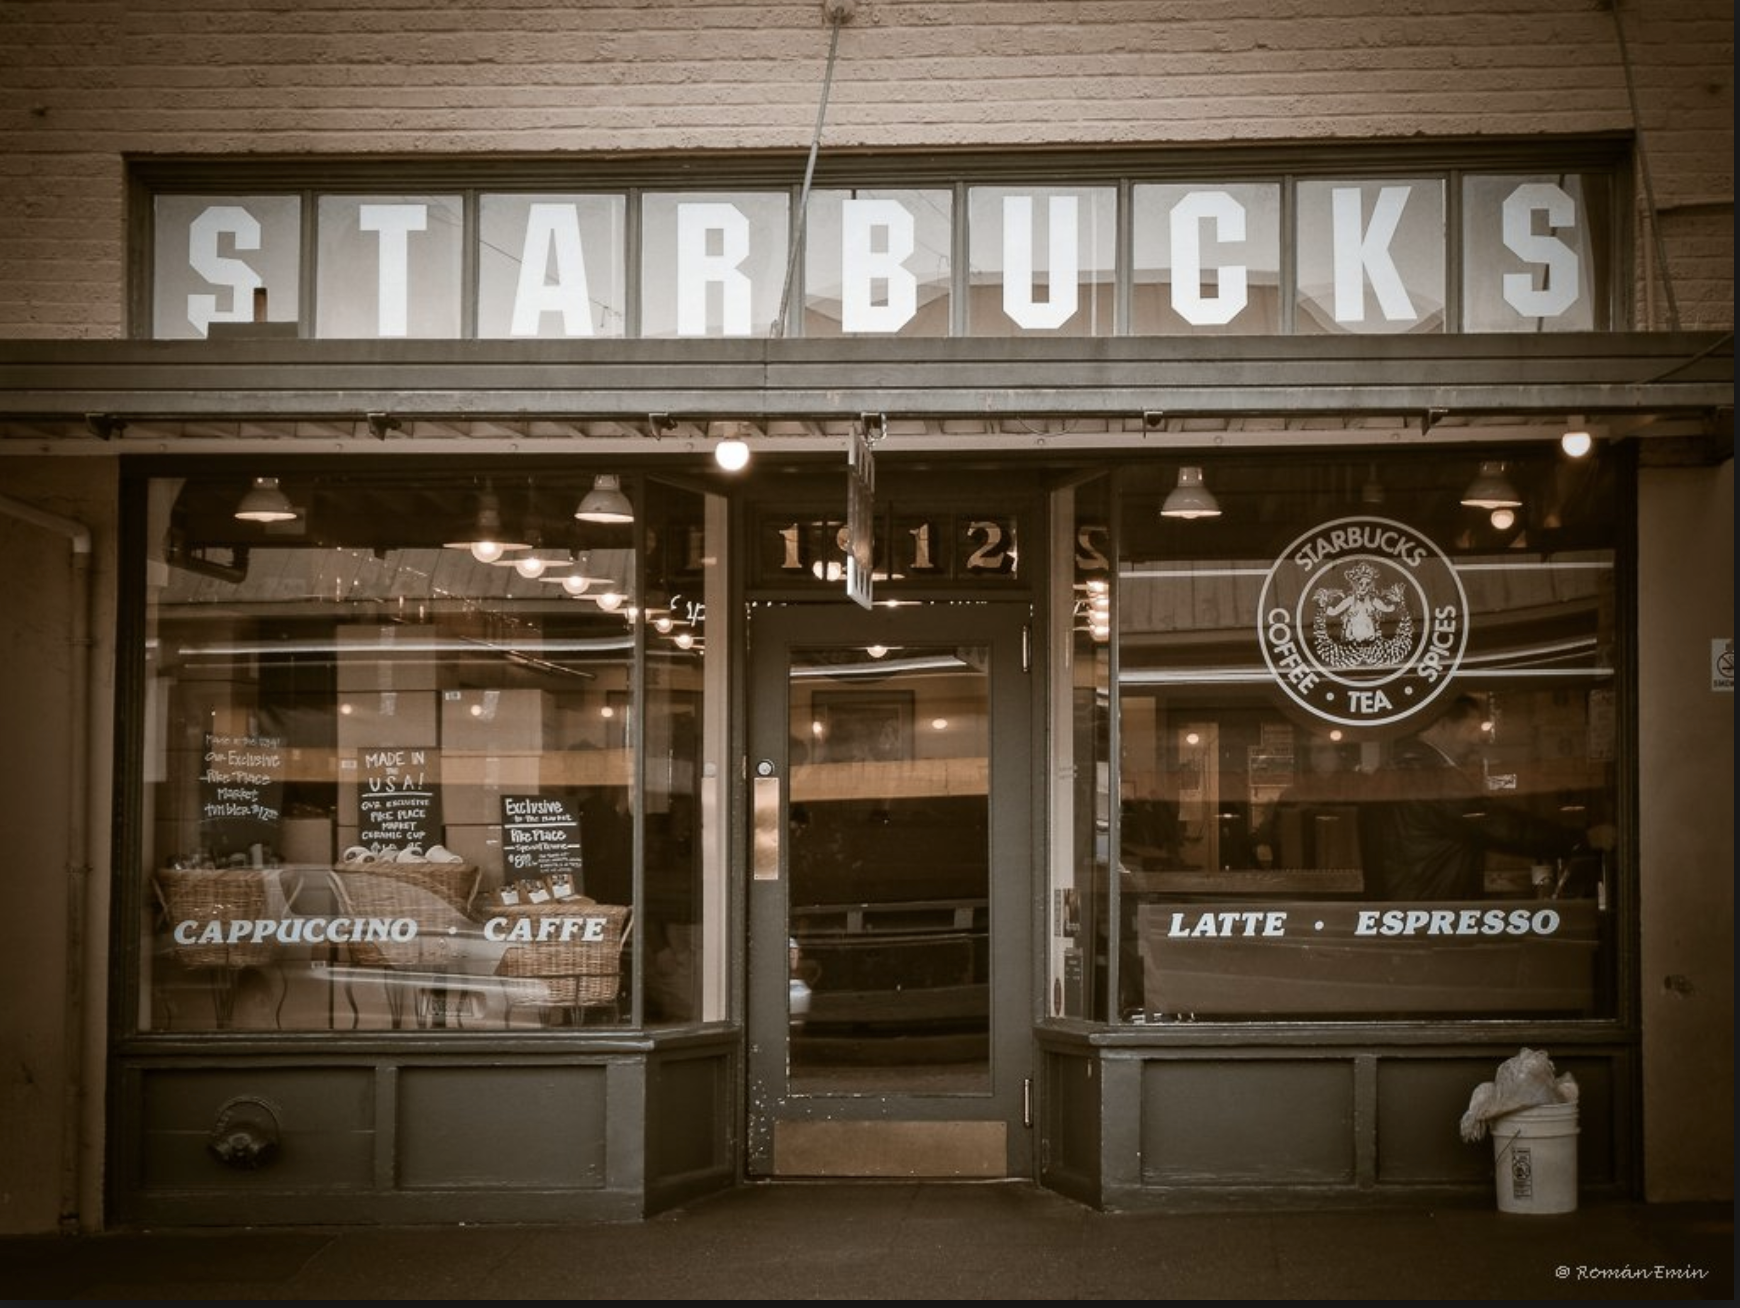 Hành trình từ con số 0 đến thương hiệu “Starbucks” tỷ đô của Howard Schutz: Được học đại học nhưng phải bỏ ngang, có khi phải bán máu để sống qua ngày, thành công gói gọn trong hai gạch đầu dòng - Ảnh 1.